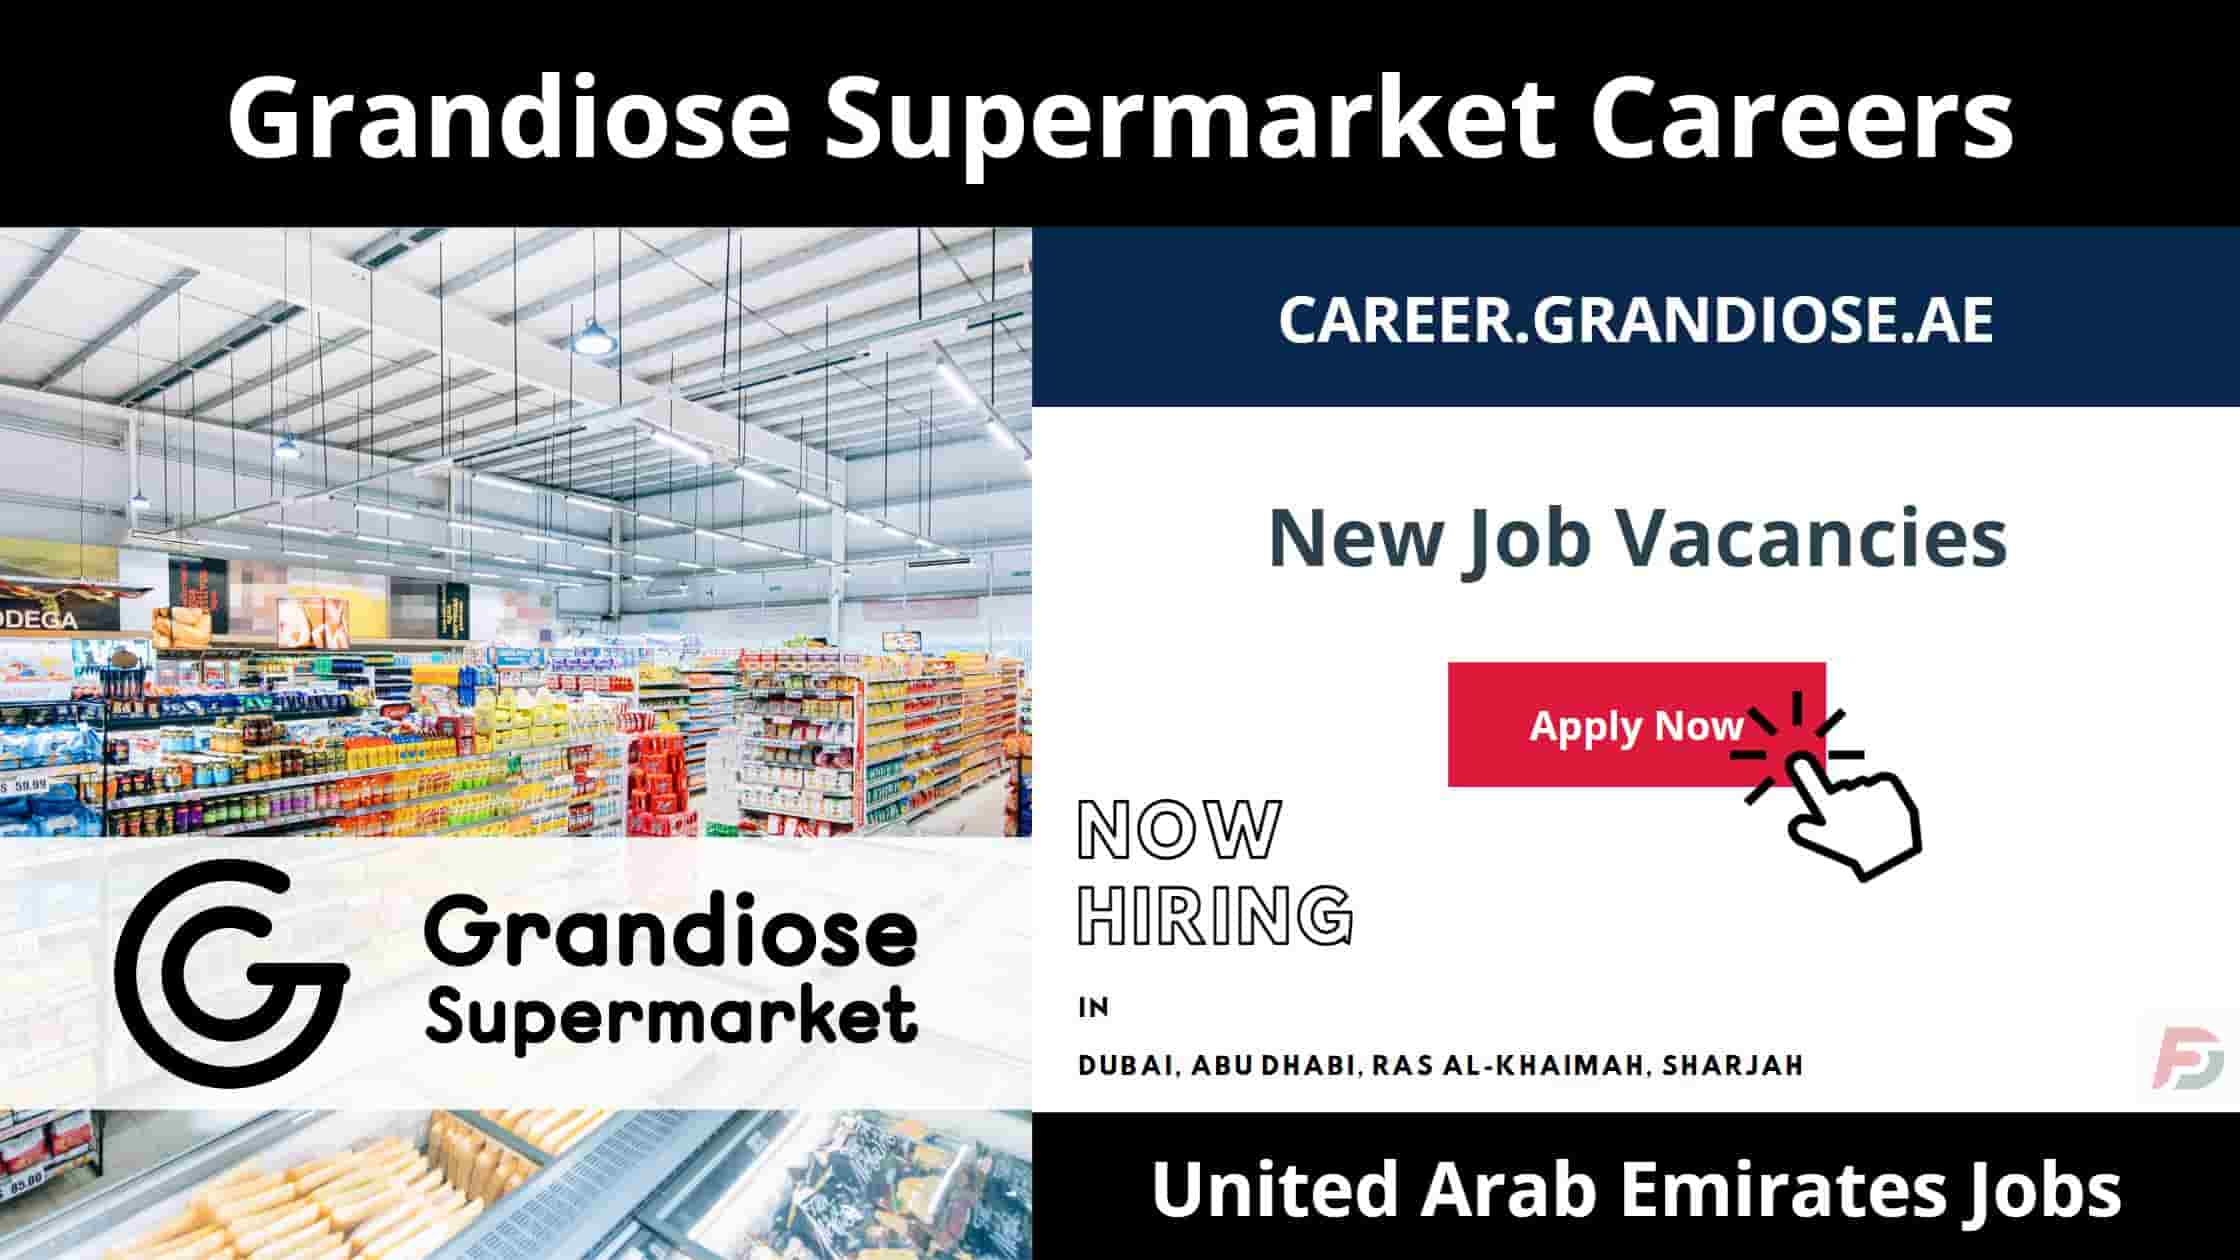 Grandiose Supermarket Careers in UAE